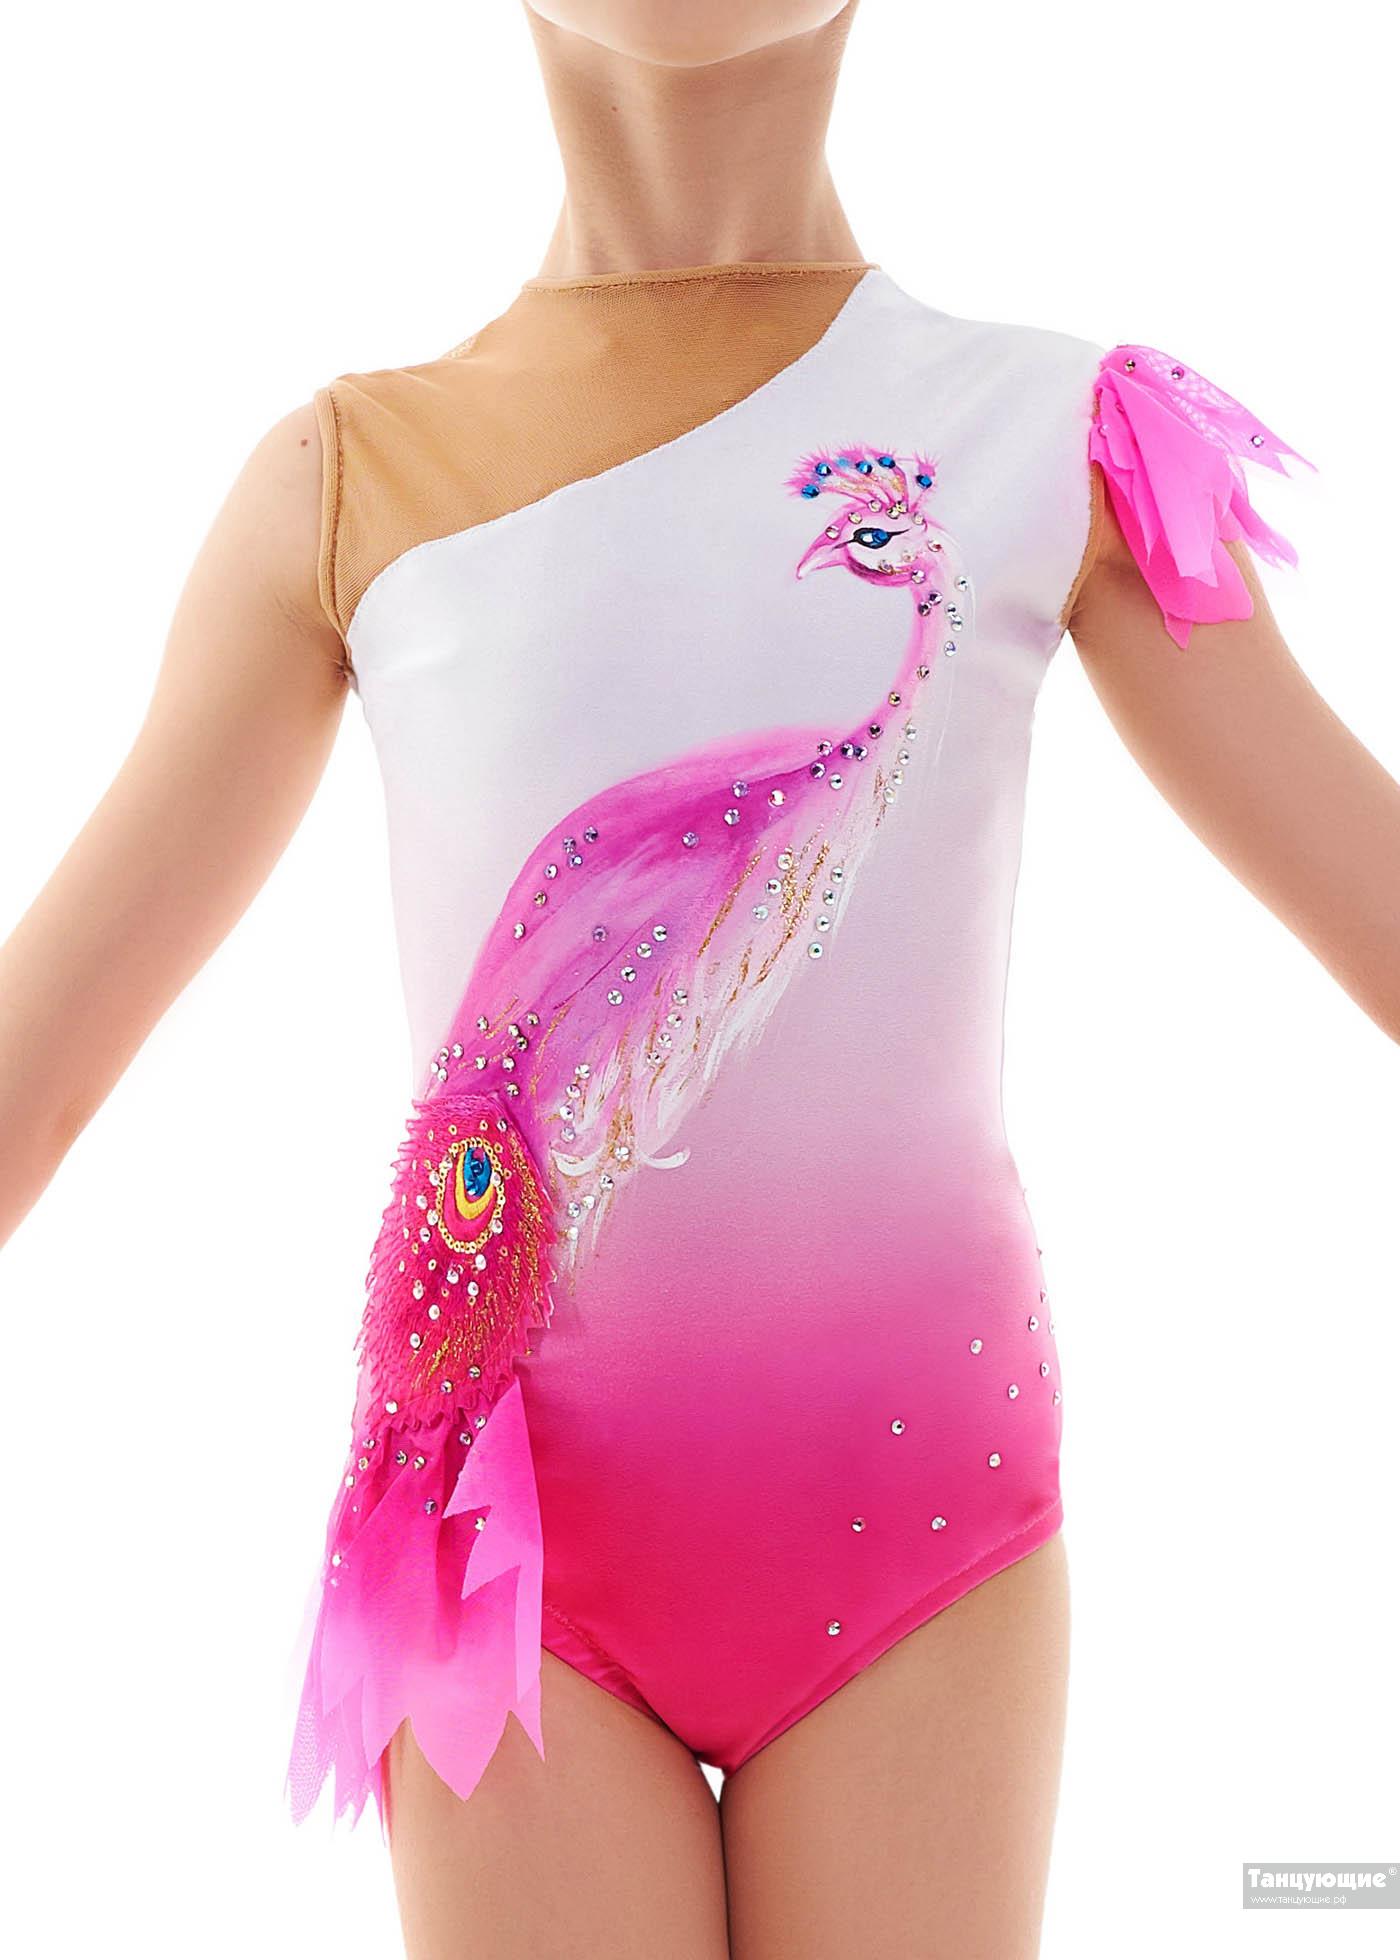 Купальник для художественной гимнастики Дарси — купить в интернет-магазине « Танцующие»